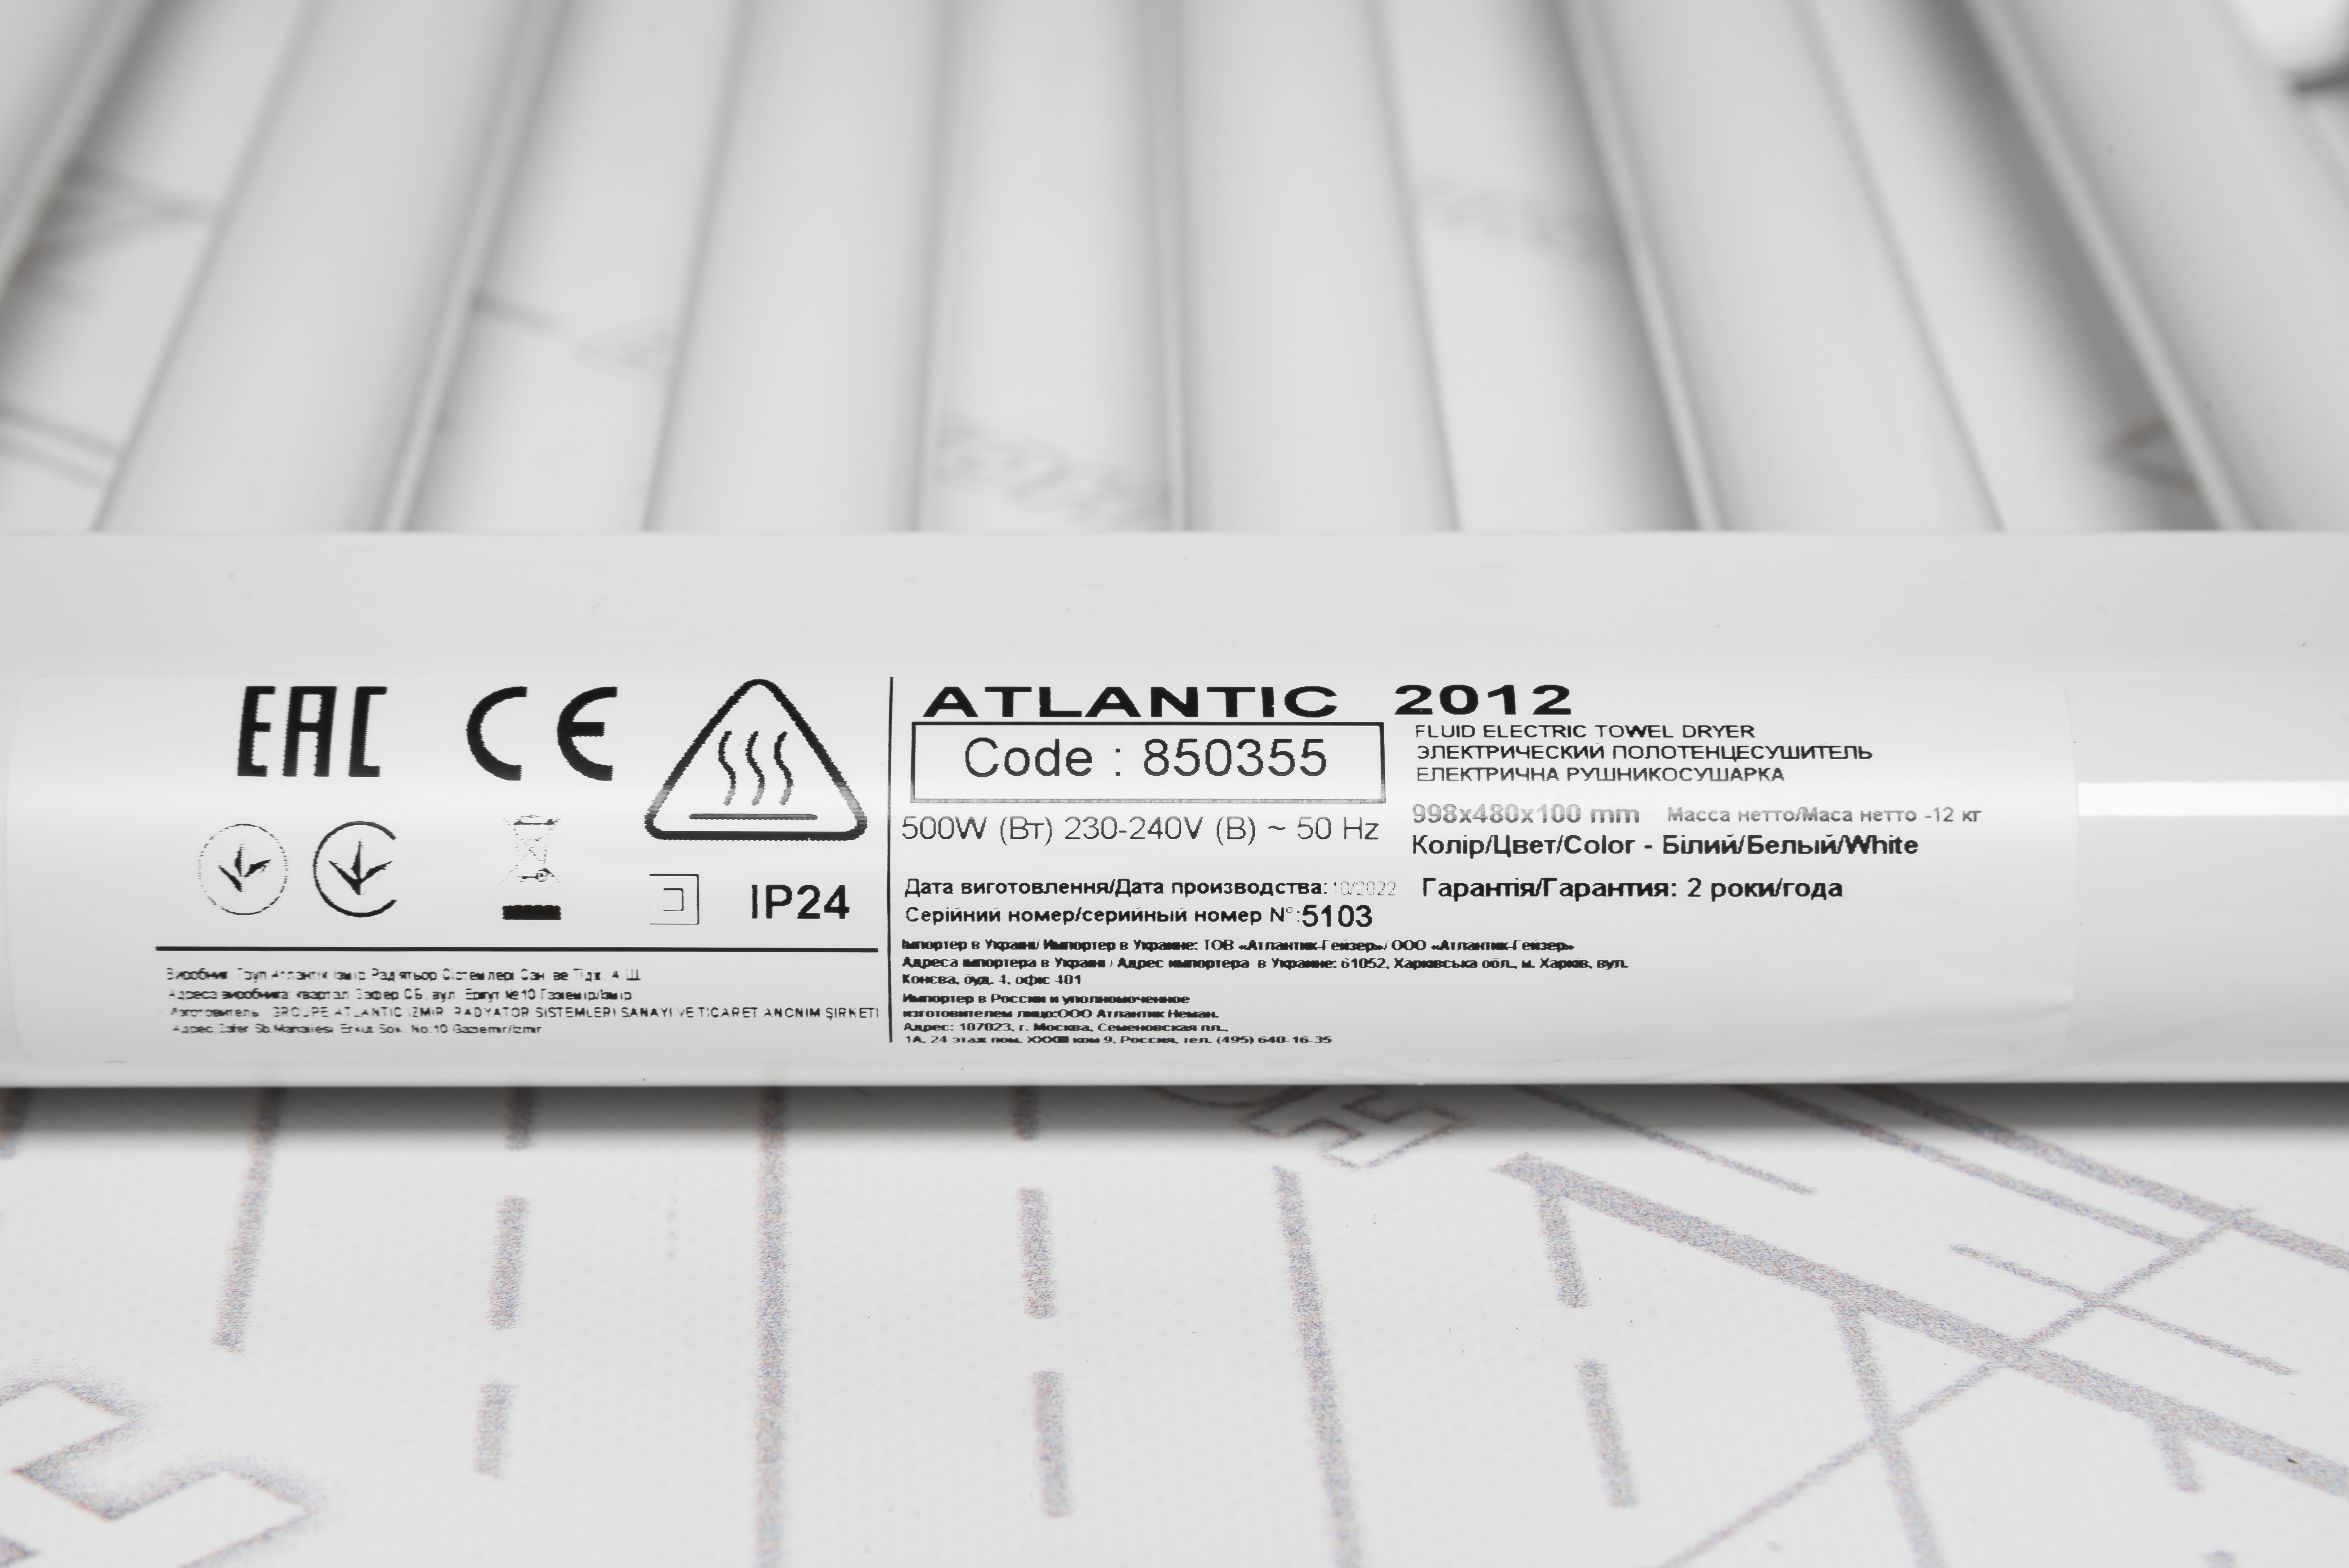 Полотенцесушитель Atlantic 2012 Straight White 500W Plug отзывы - изображения 5